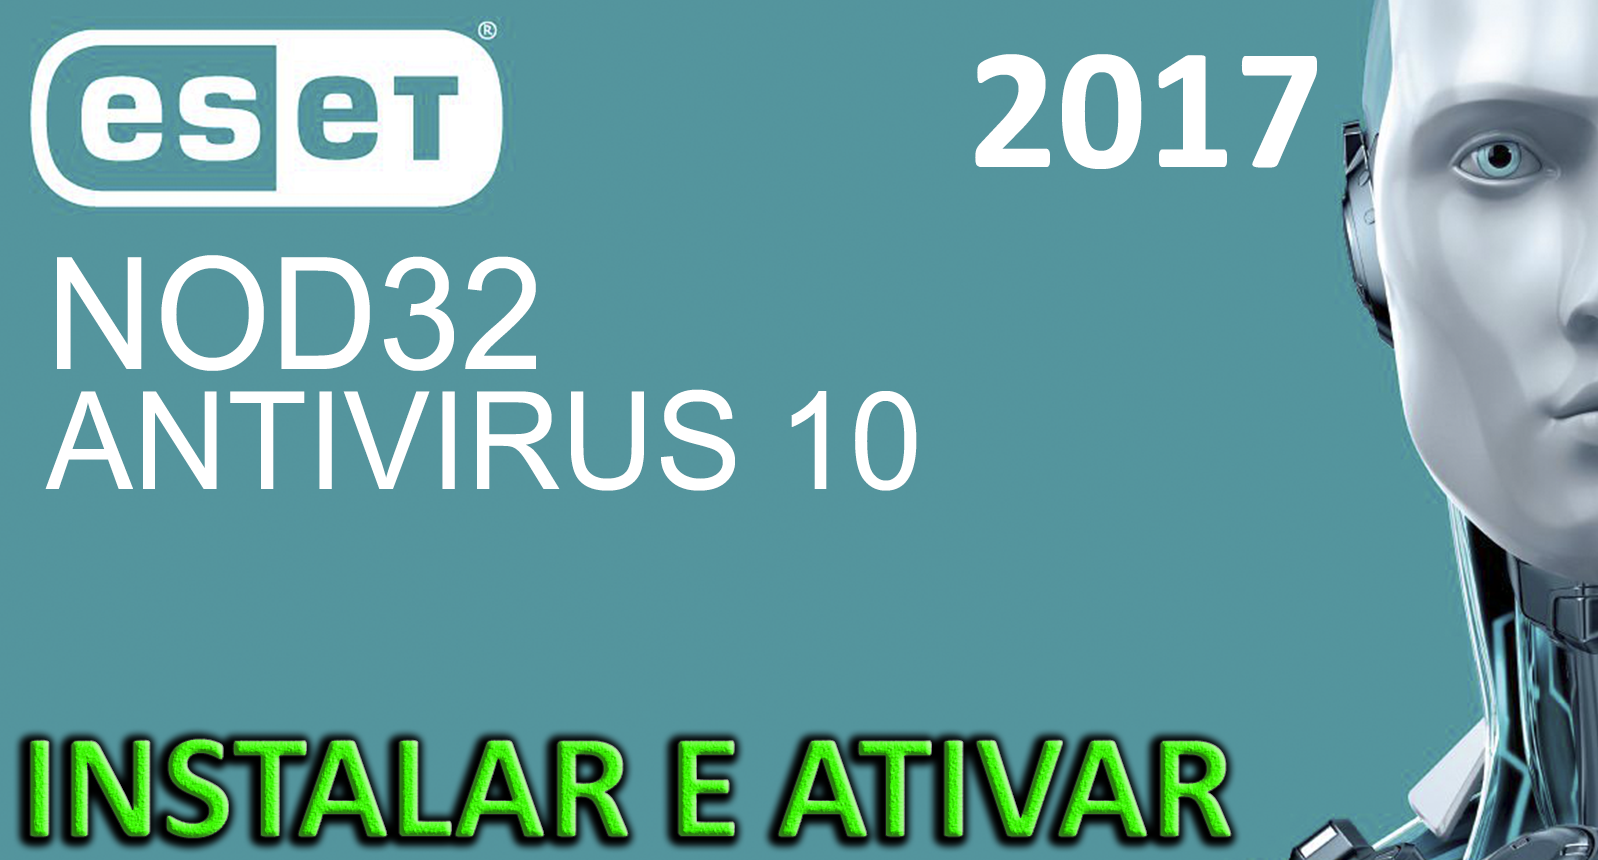 download eset nod32 antivirus 10 full crack